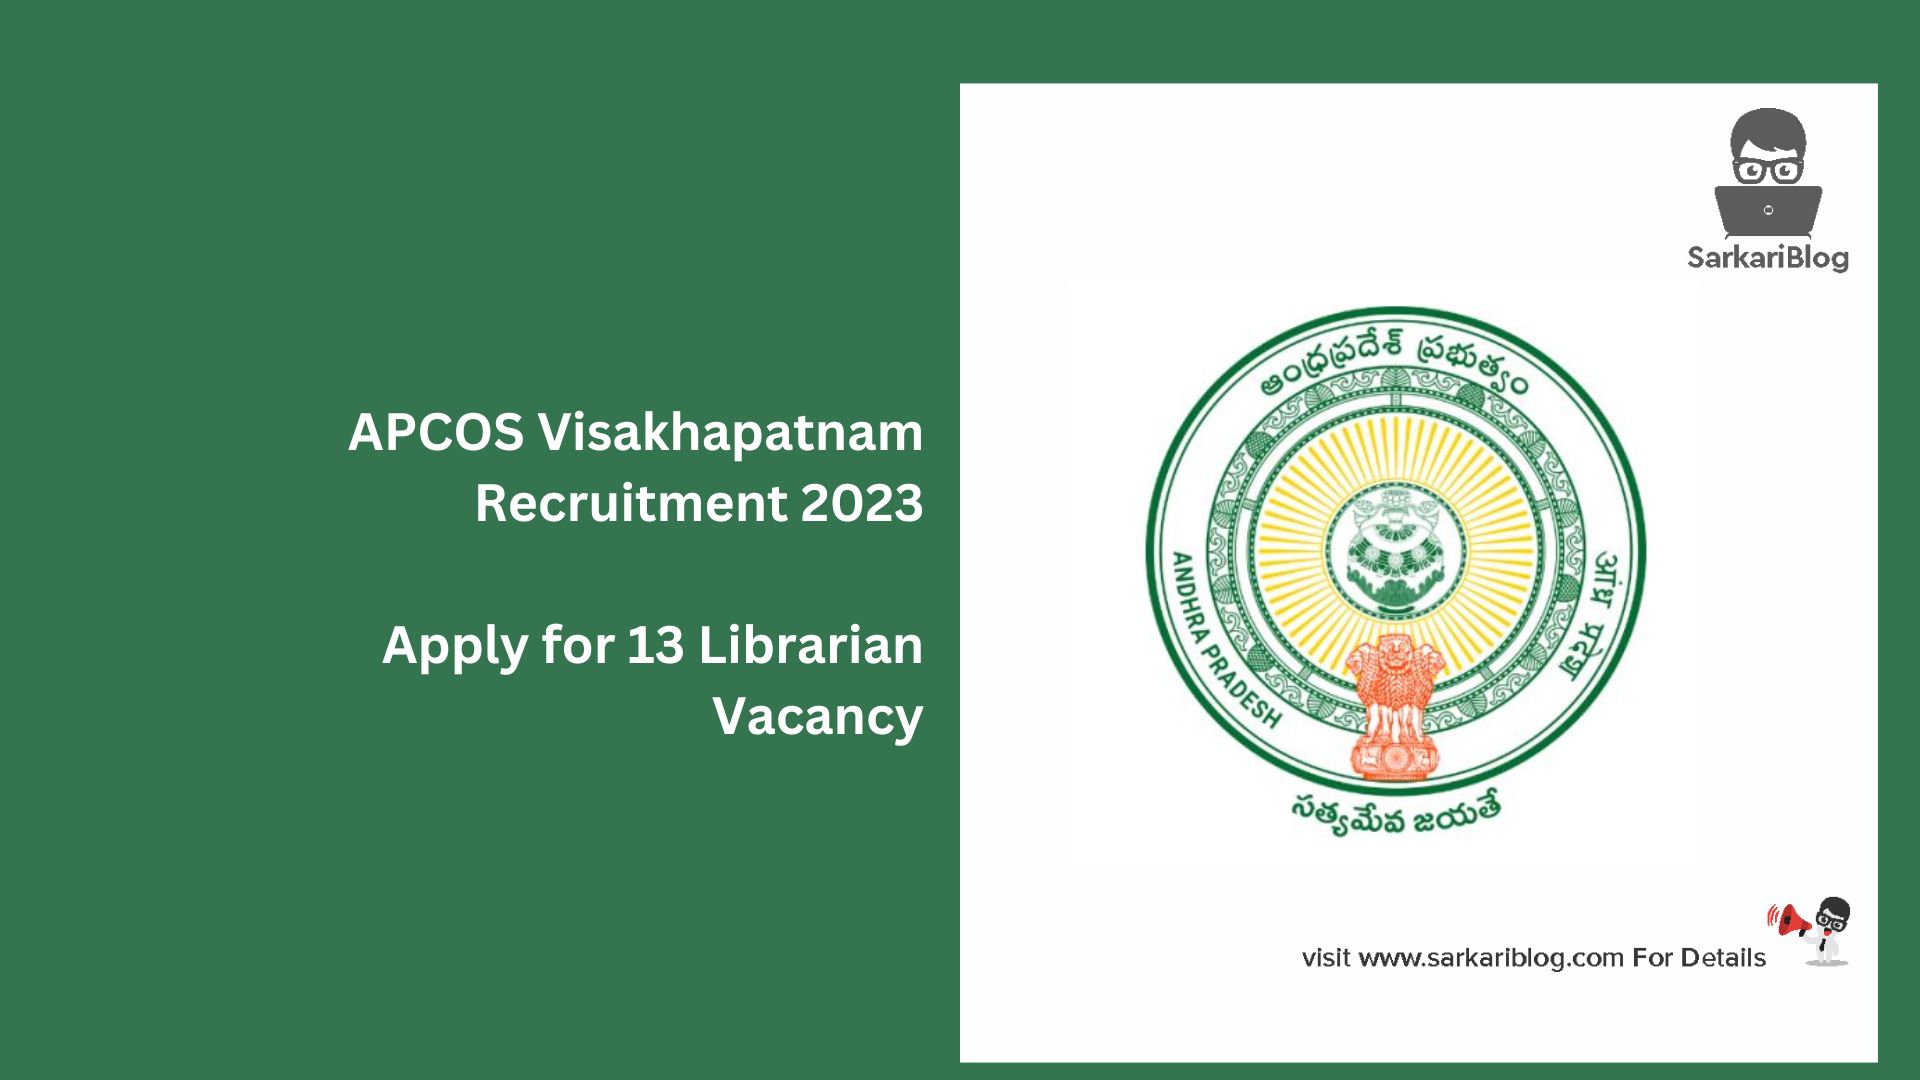 APCOS Visakhapatnam Recruitment 2023